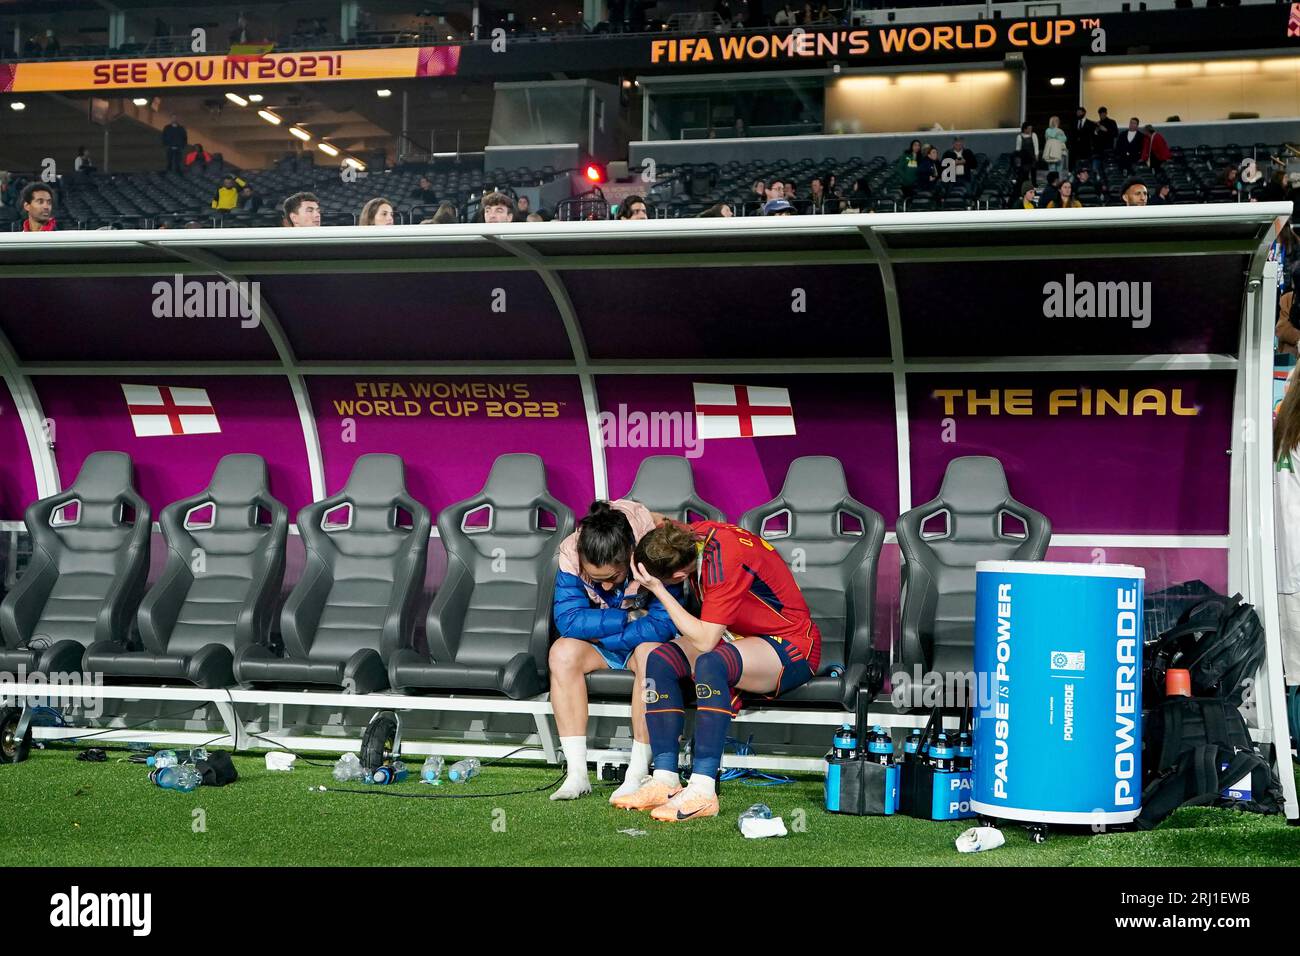 Die Spanierin Ona Batlle (rechts) konsoliert die Englands Lucy Bronze nach der Niederlage Englands im Endspiel der FIFA Frauen-Weltmeisterschaft im Stadion Australien, Sydney. Bilddatum: Sonntag, 20. August 2023. Stockfoto